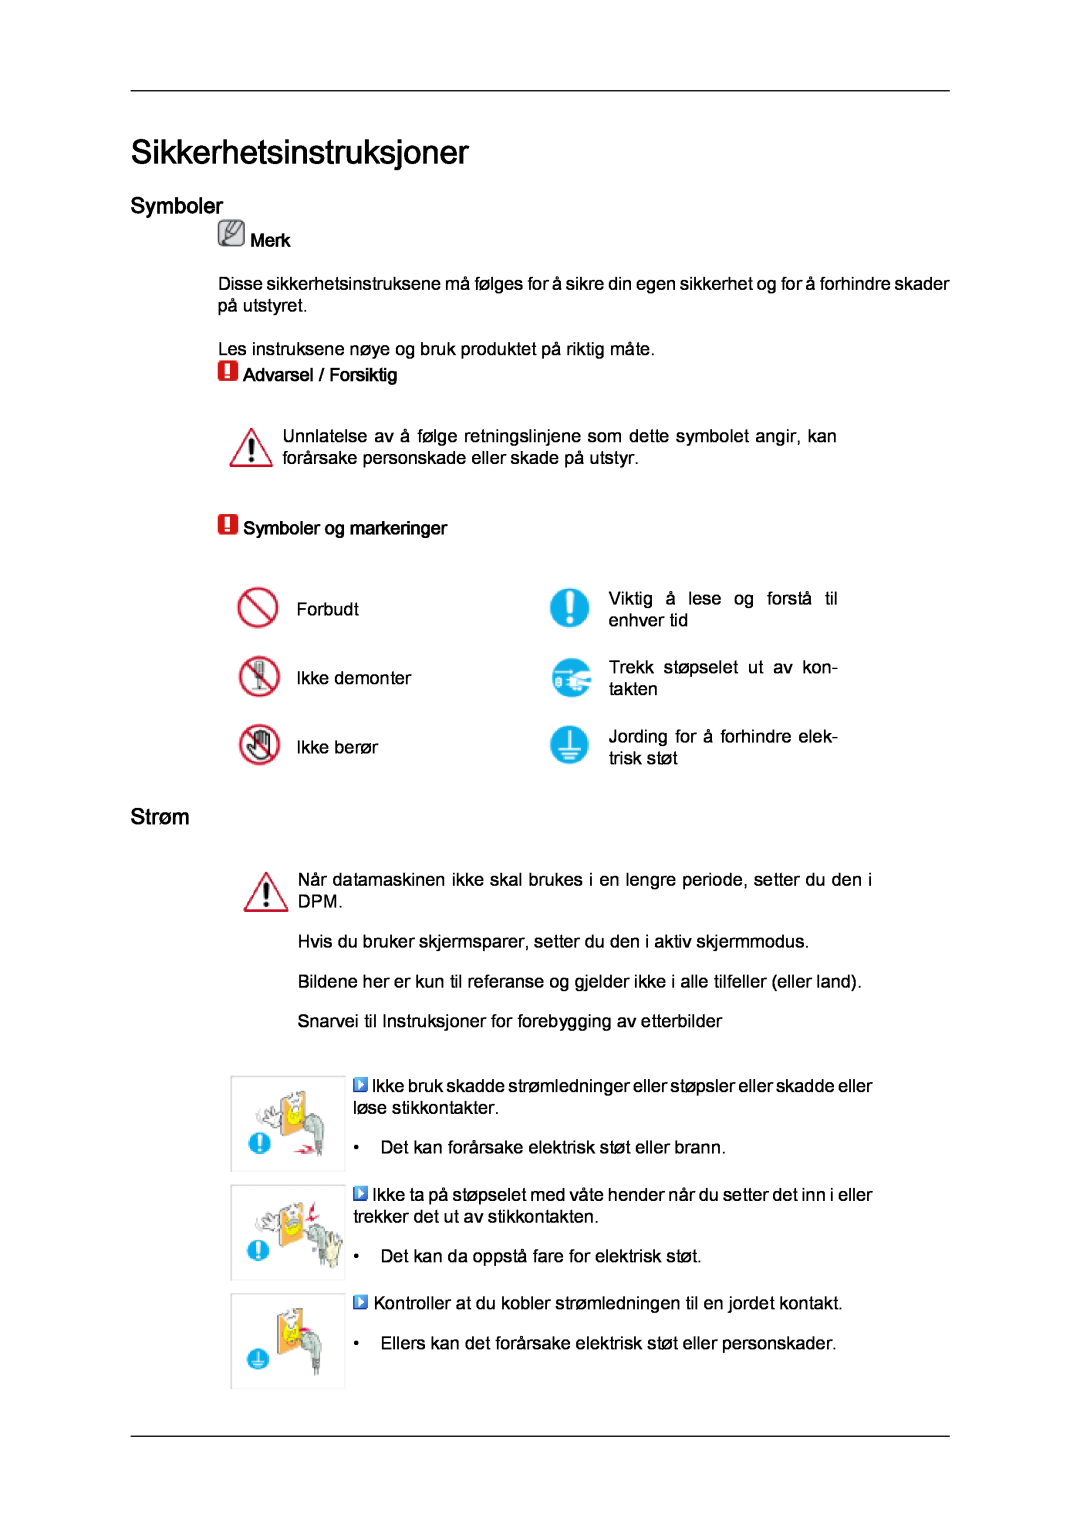 Samsung PH63KPFLBF/EN manual Sikkerhetsinstruksjoner, Strøm, Merk, Advarsel / Forsiktig, Symboler og markeringer 